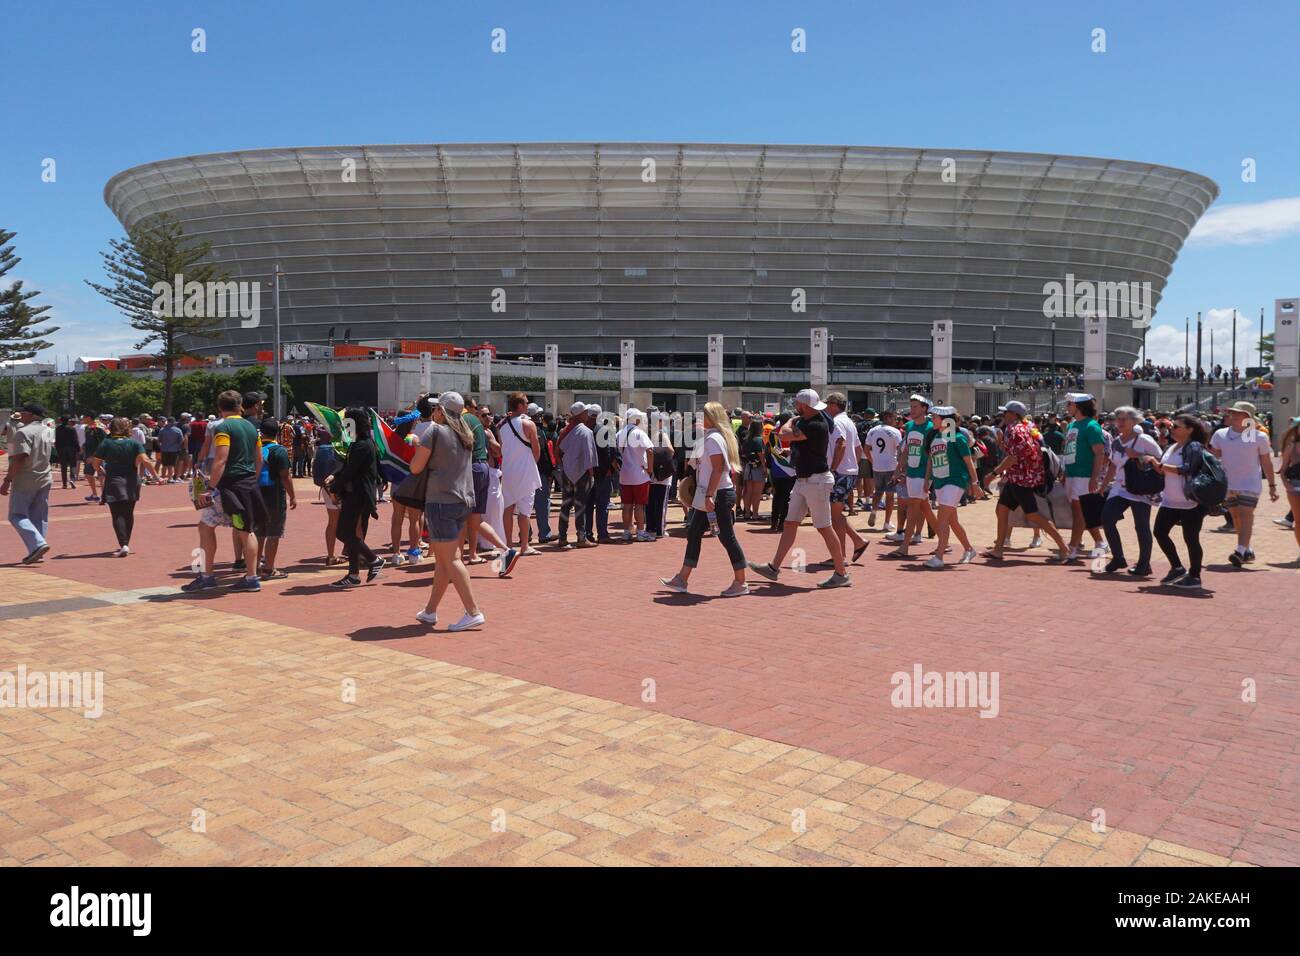 Des foules de gens, fans, supporters arrivent pour le dernier jour de rugby à 7 match à Cape Town stadium, Green Point, Afrique du Sud une certaine usure fancy dress Banque D'Images